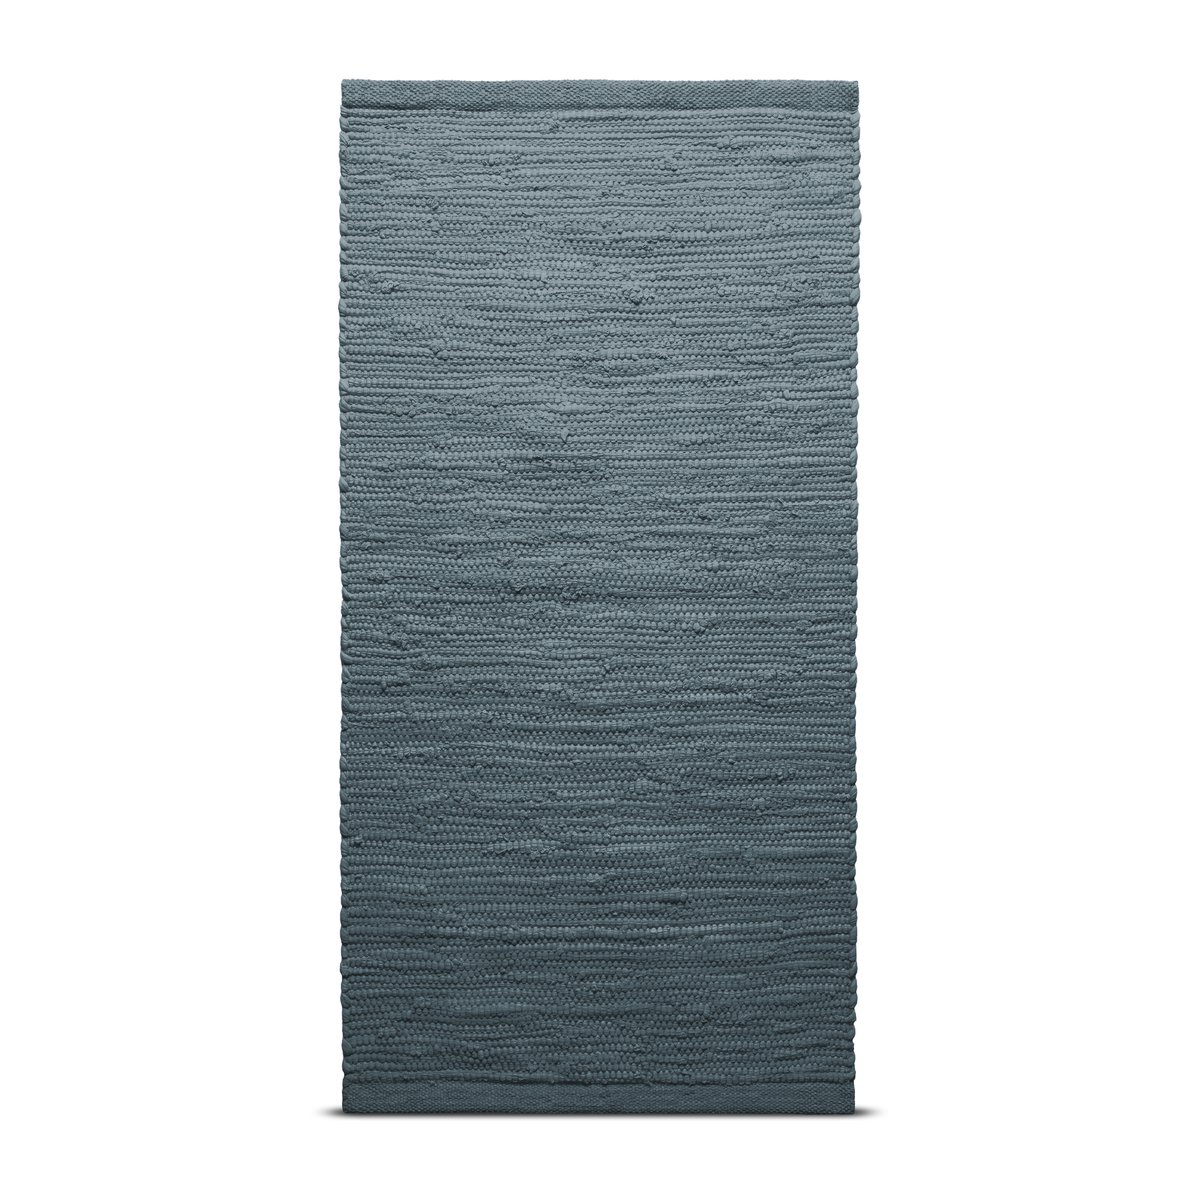 Rug Solid Cotton vloerkleed 170 x 240 cm. steel grey (grijs)